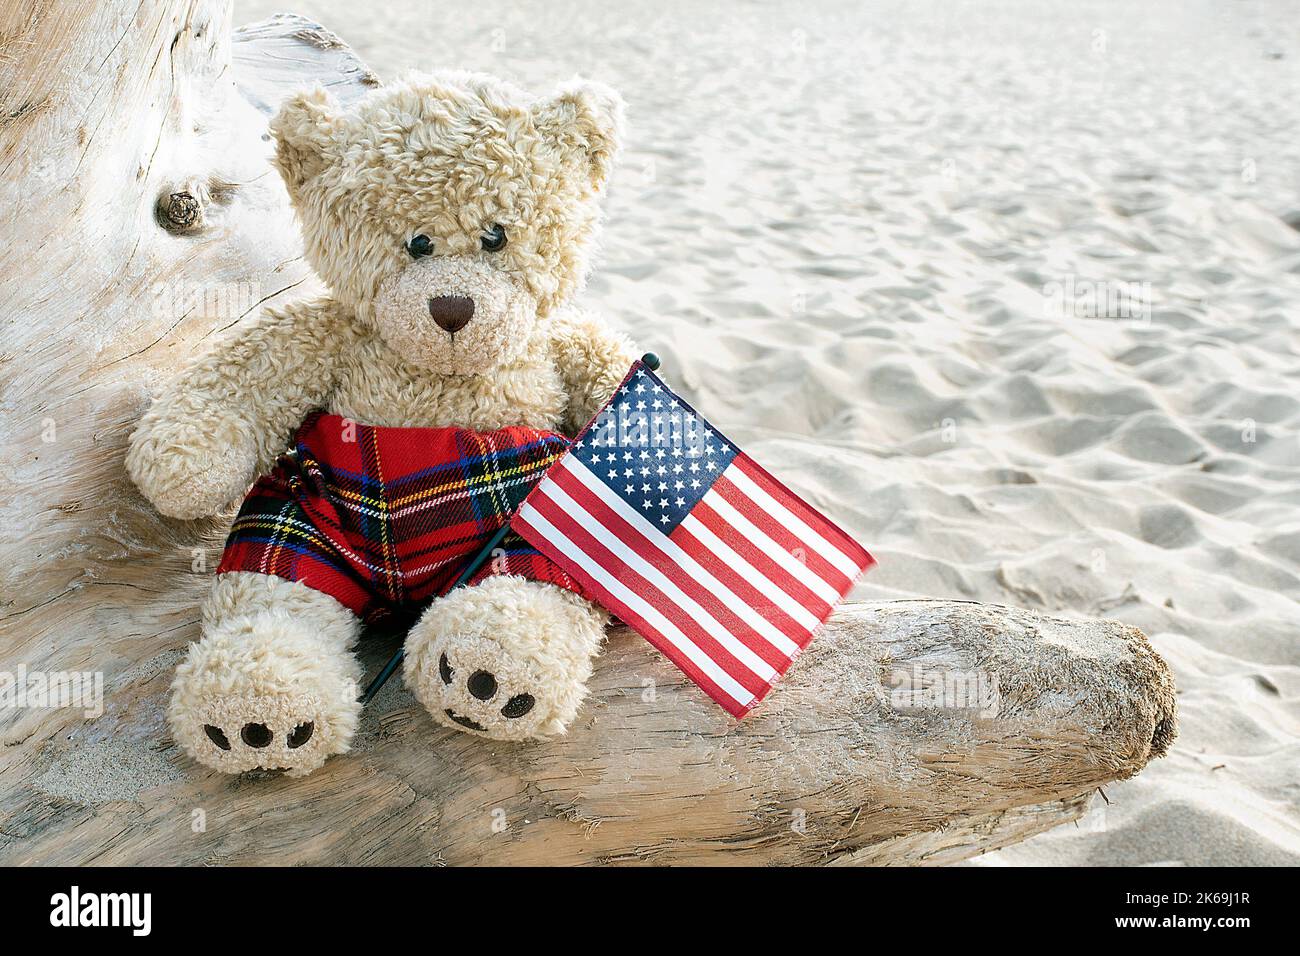 Teddy bear on a beach driftwood log with an American flag Stock Photo